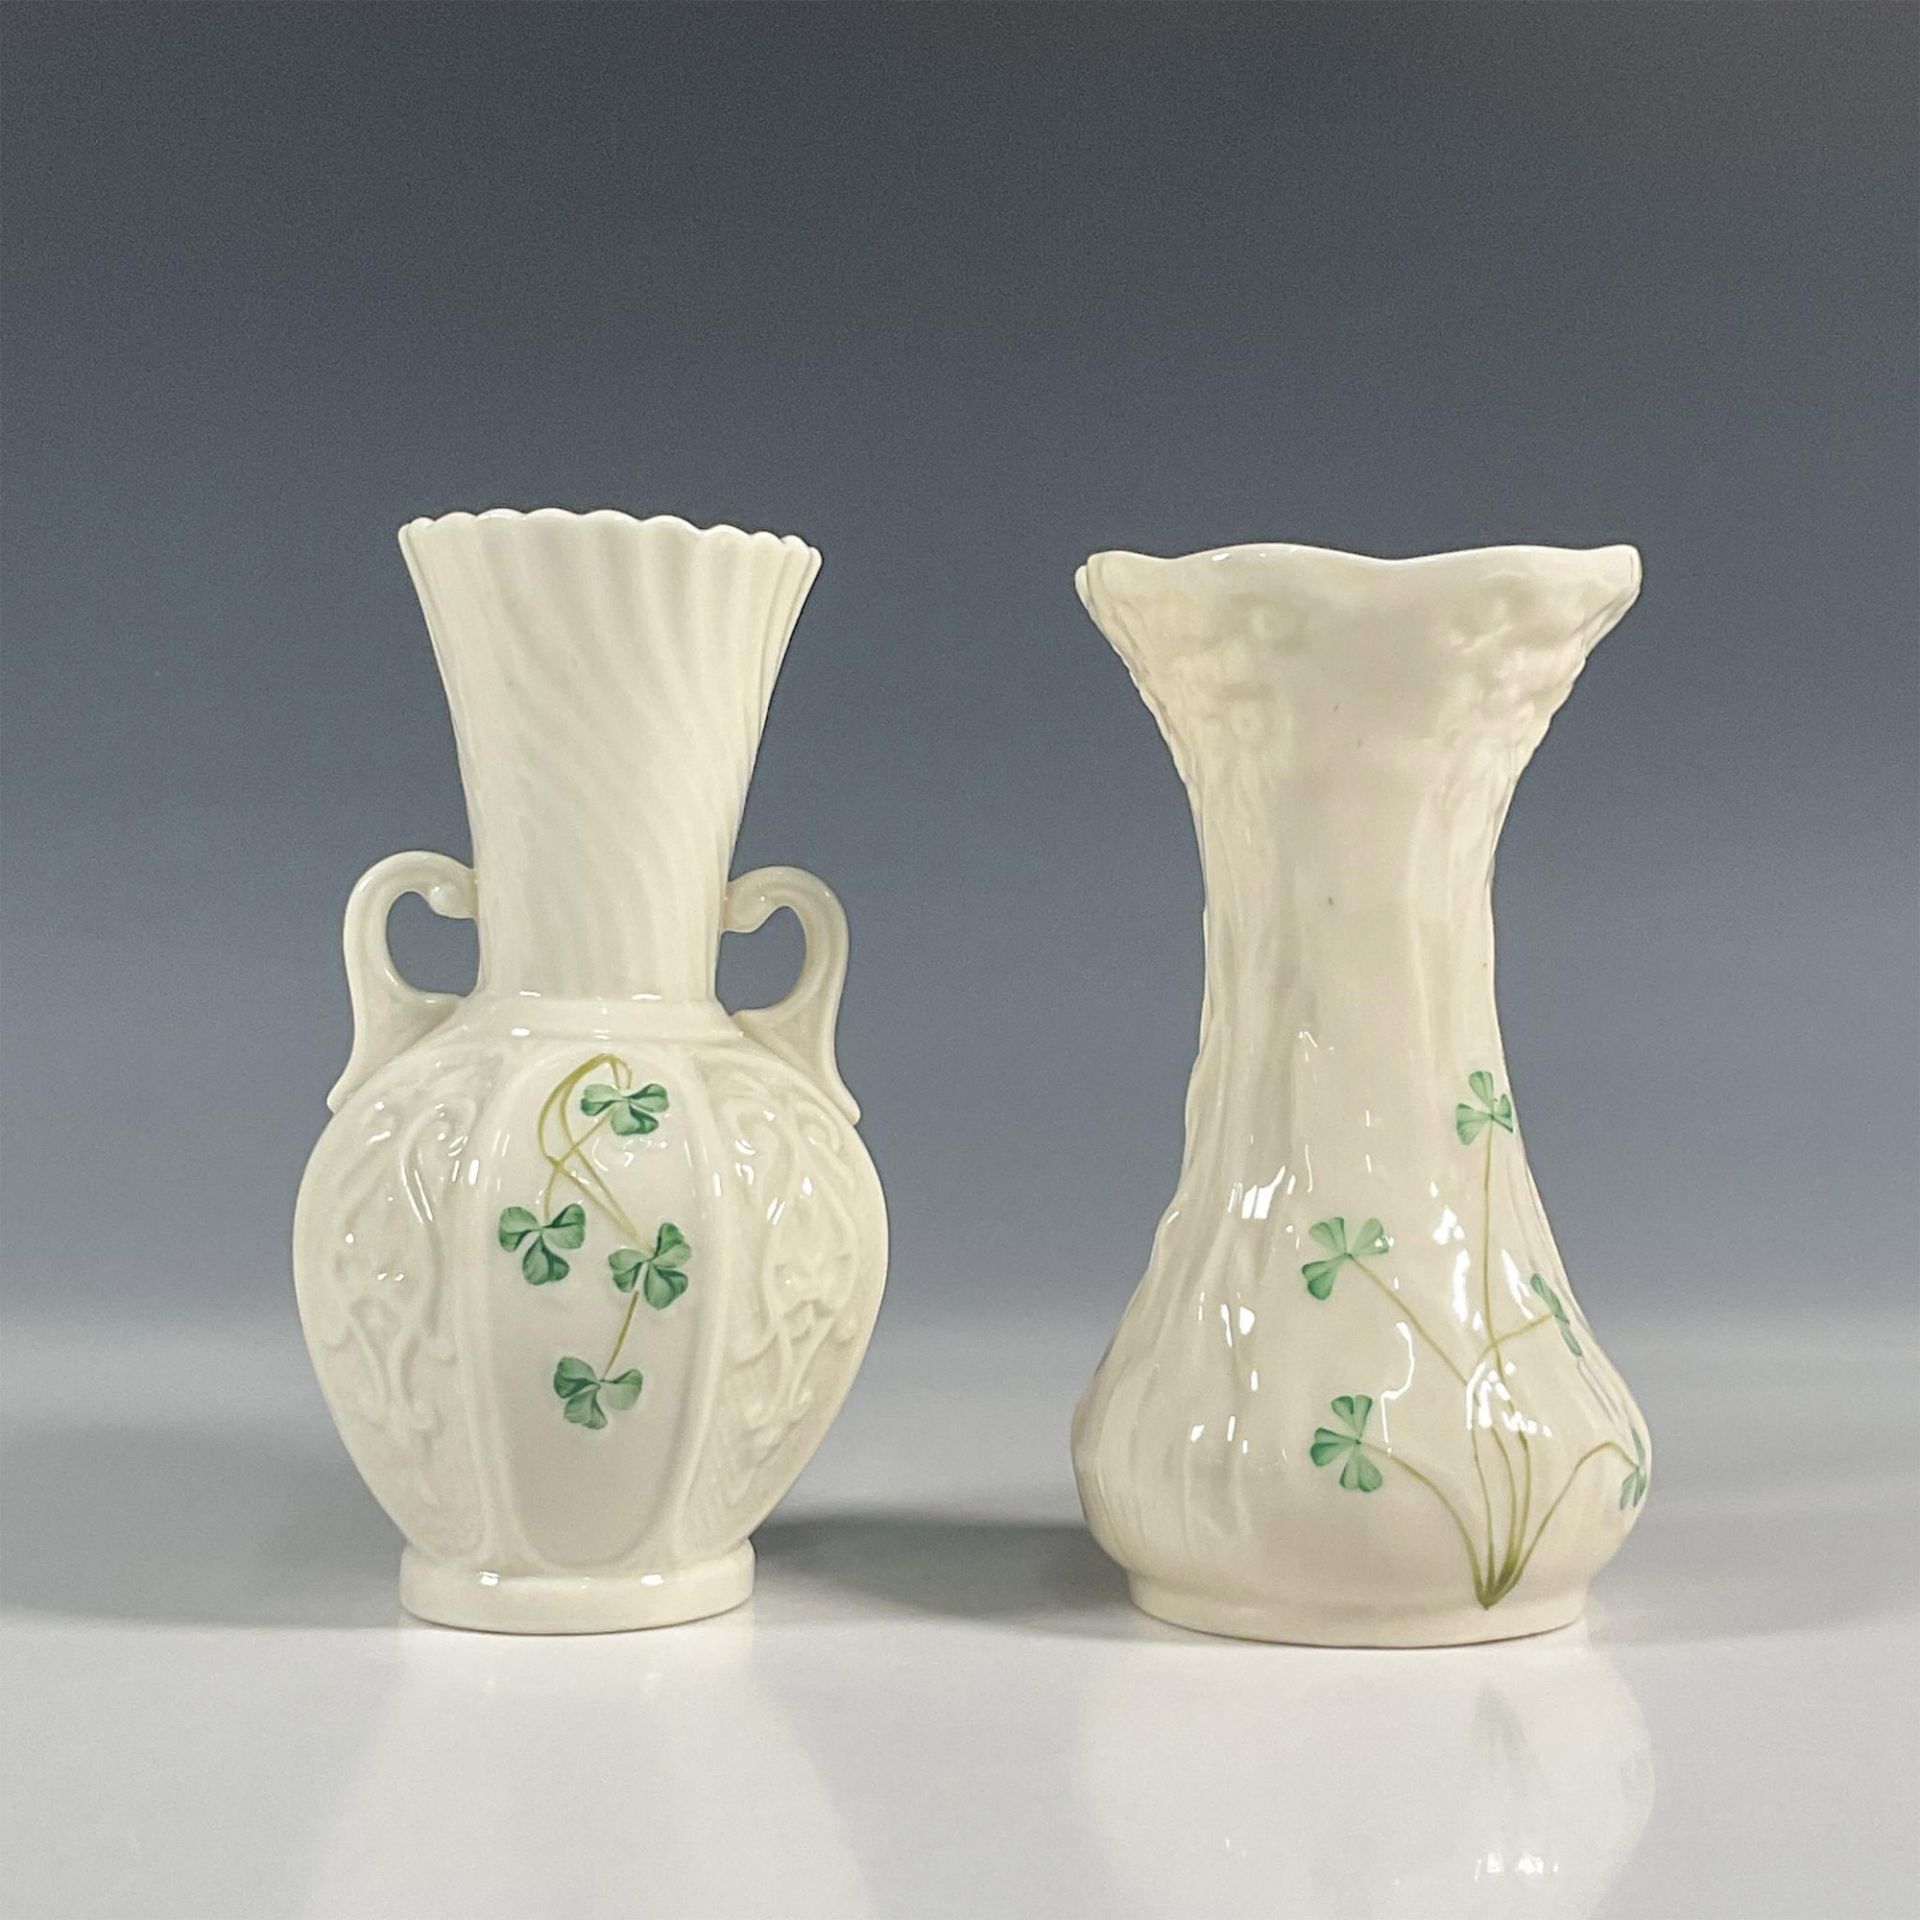 2pc Belleek Pottery Porcelain Vases, Shamrock - Image 2 of 3